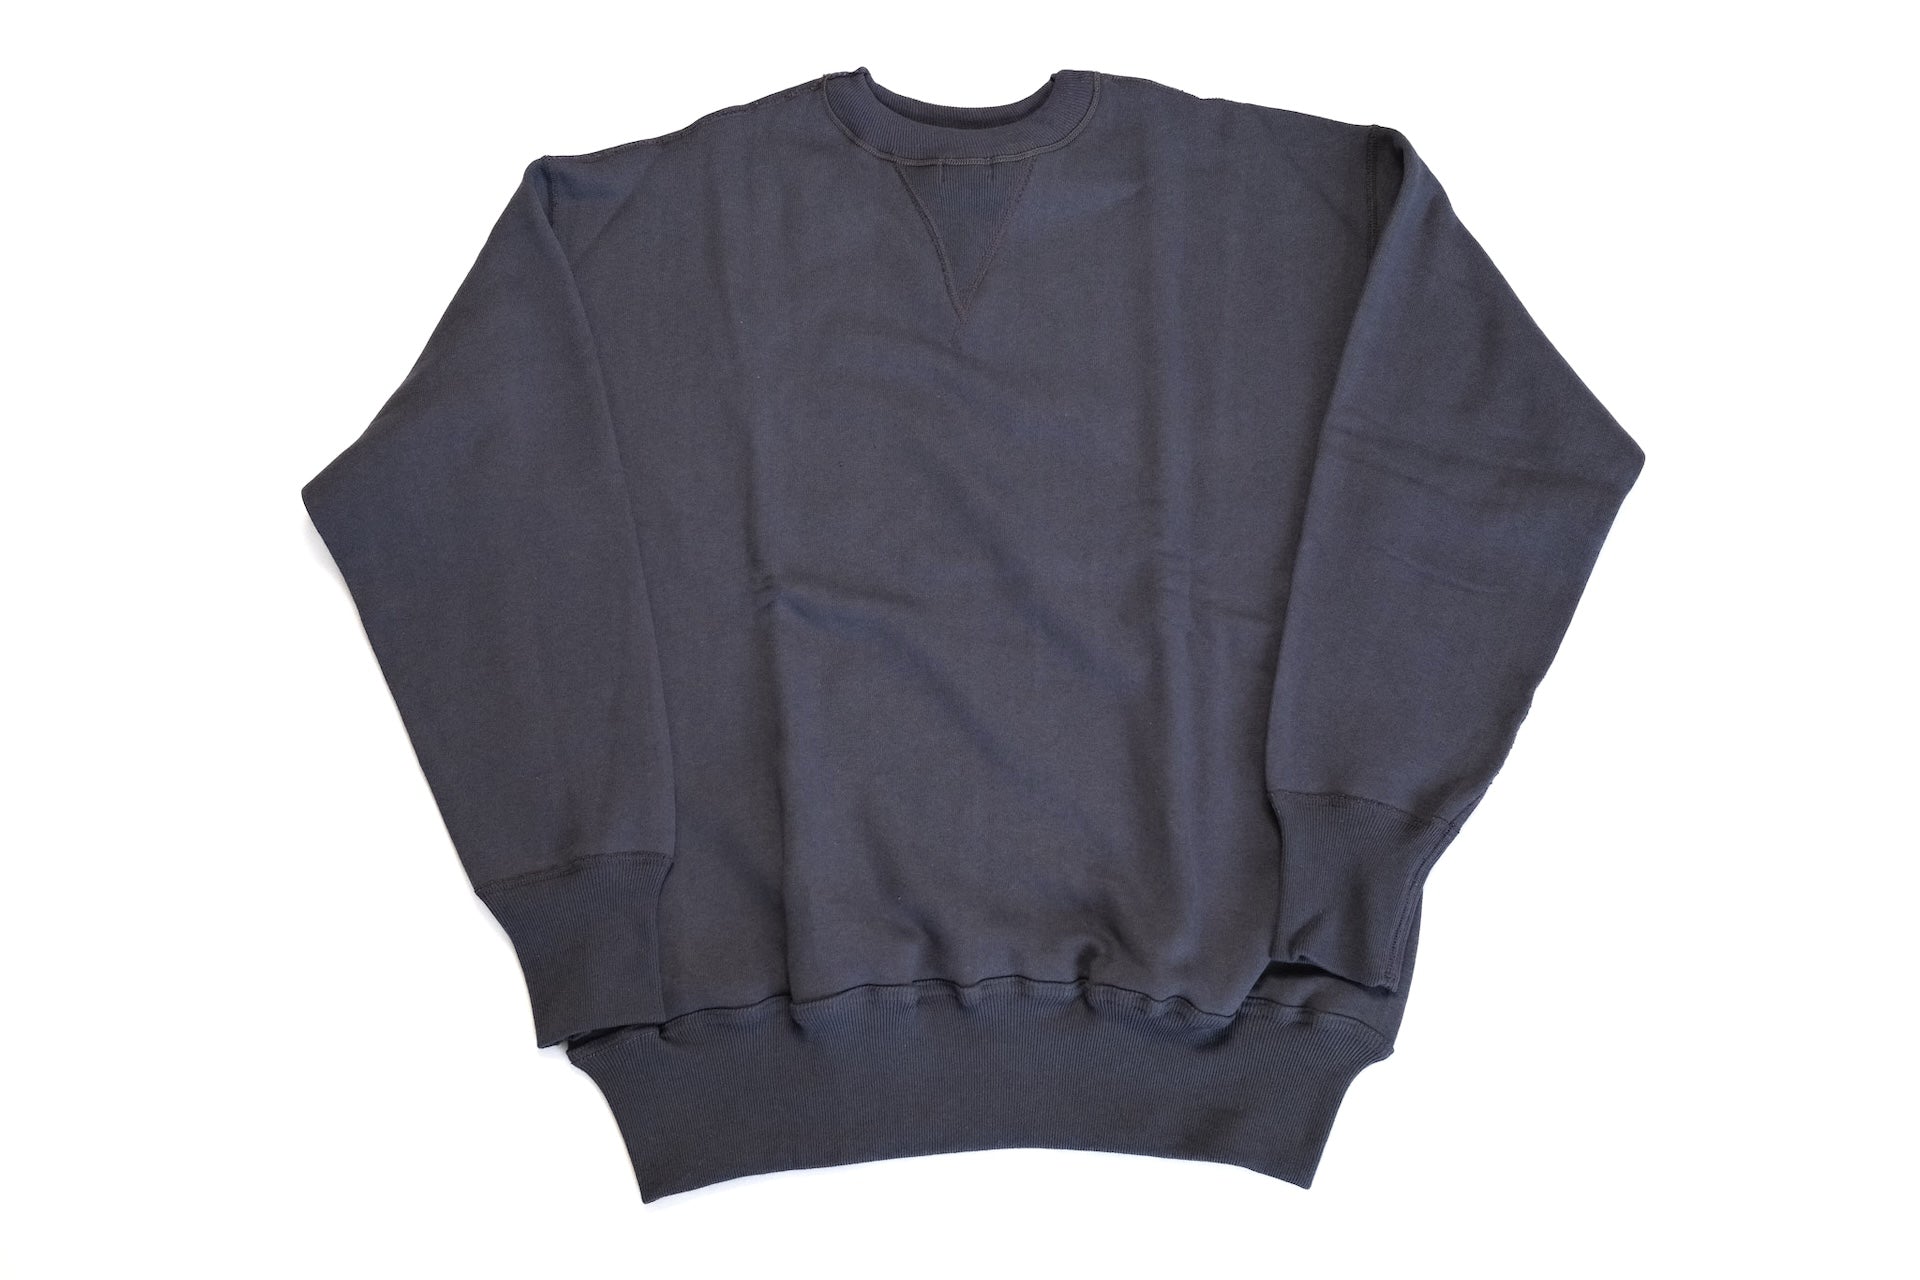 Warehouse Lot.401 10oz "Standard" Loopwheeled Sweatshirt (Navy)